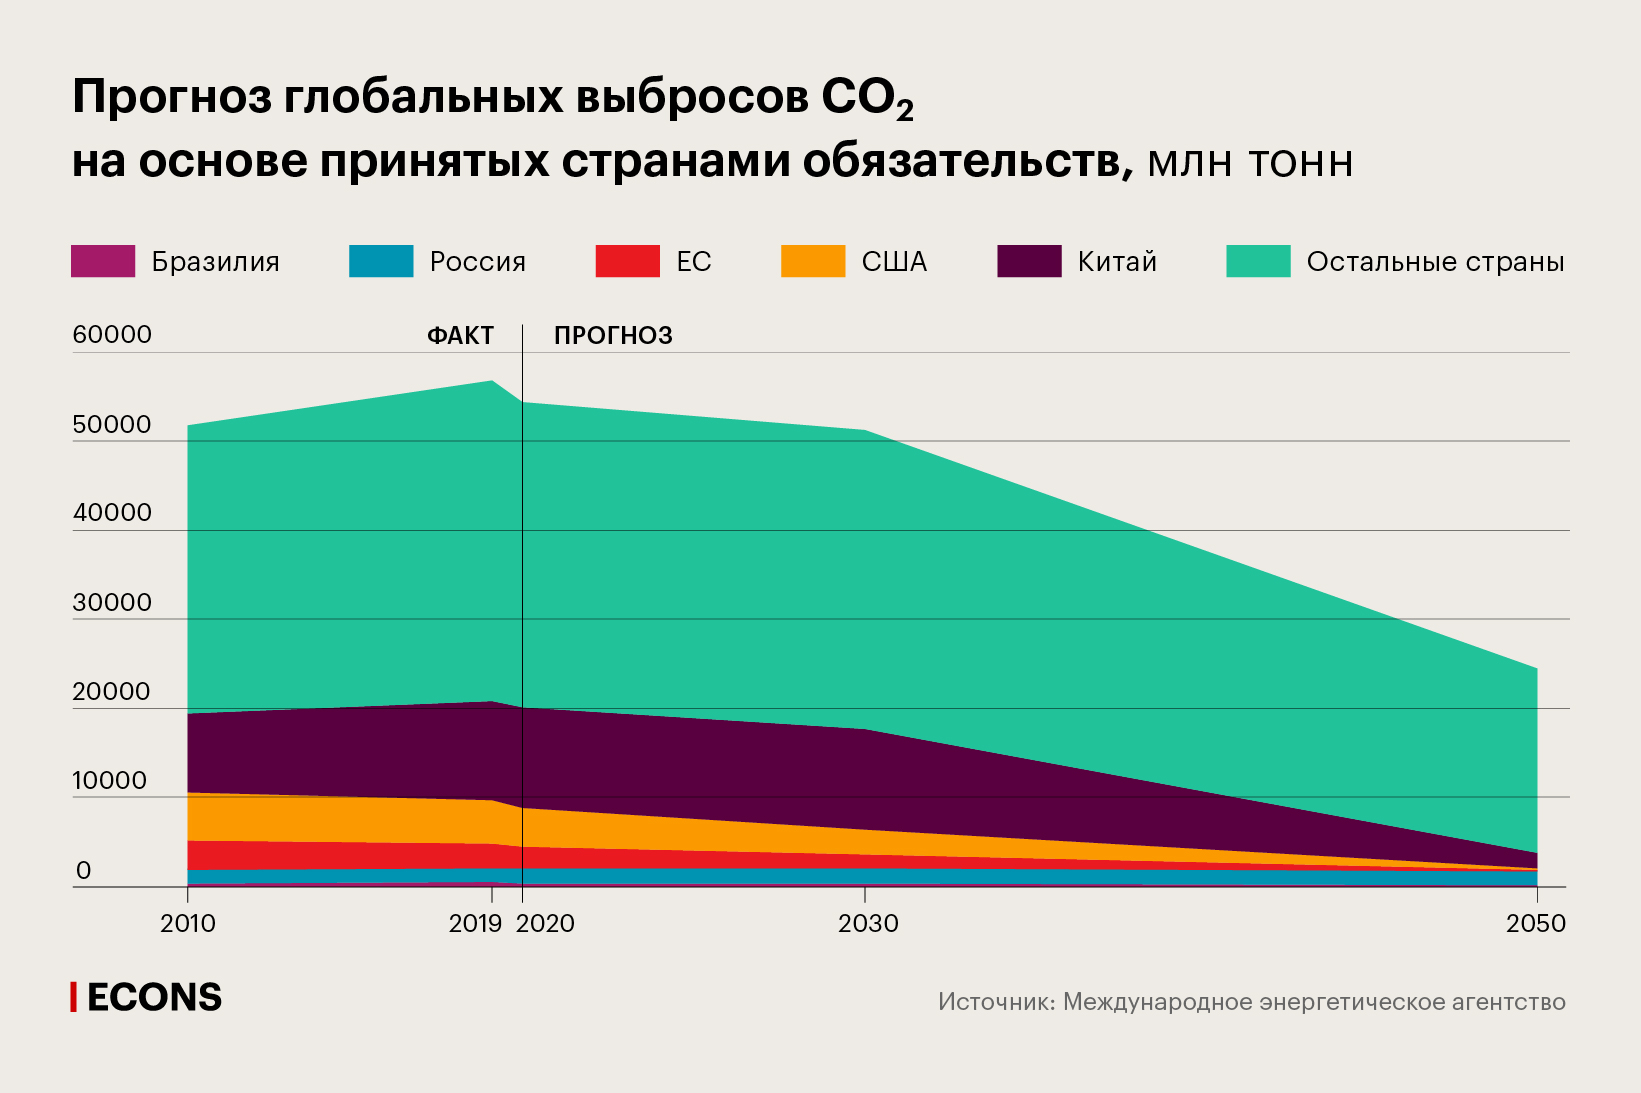 Прогноз глобальных выбросов СО2 на основе принятых странами обязательств, млн тонн